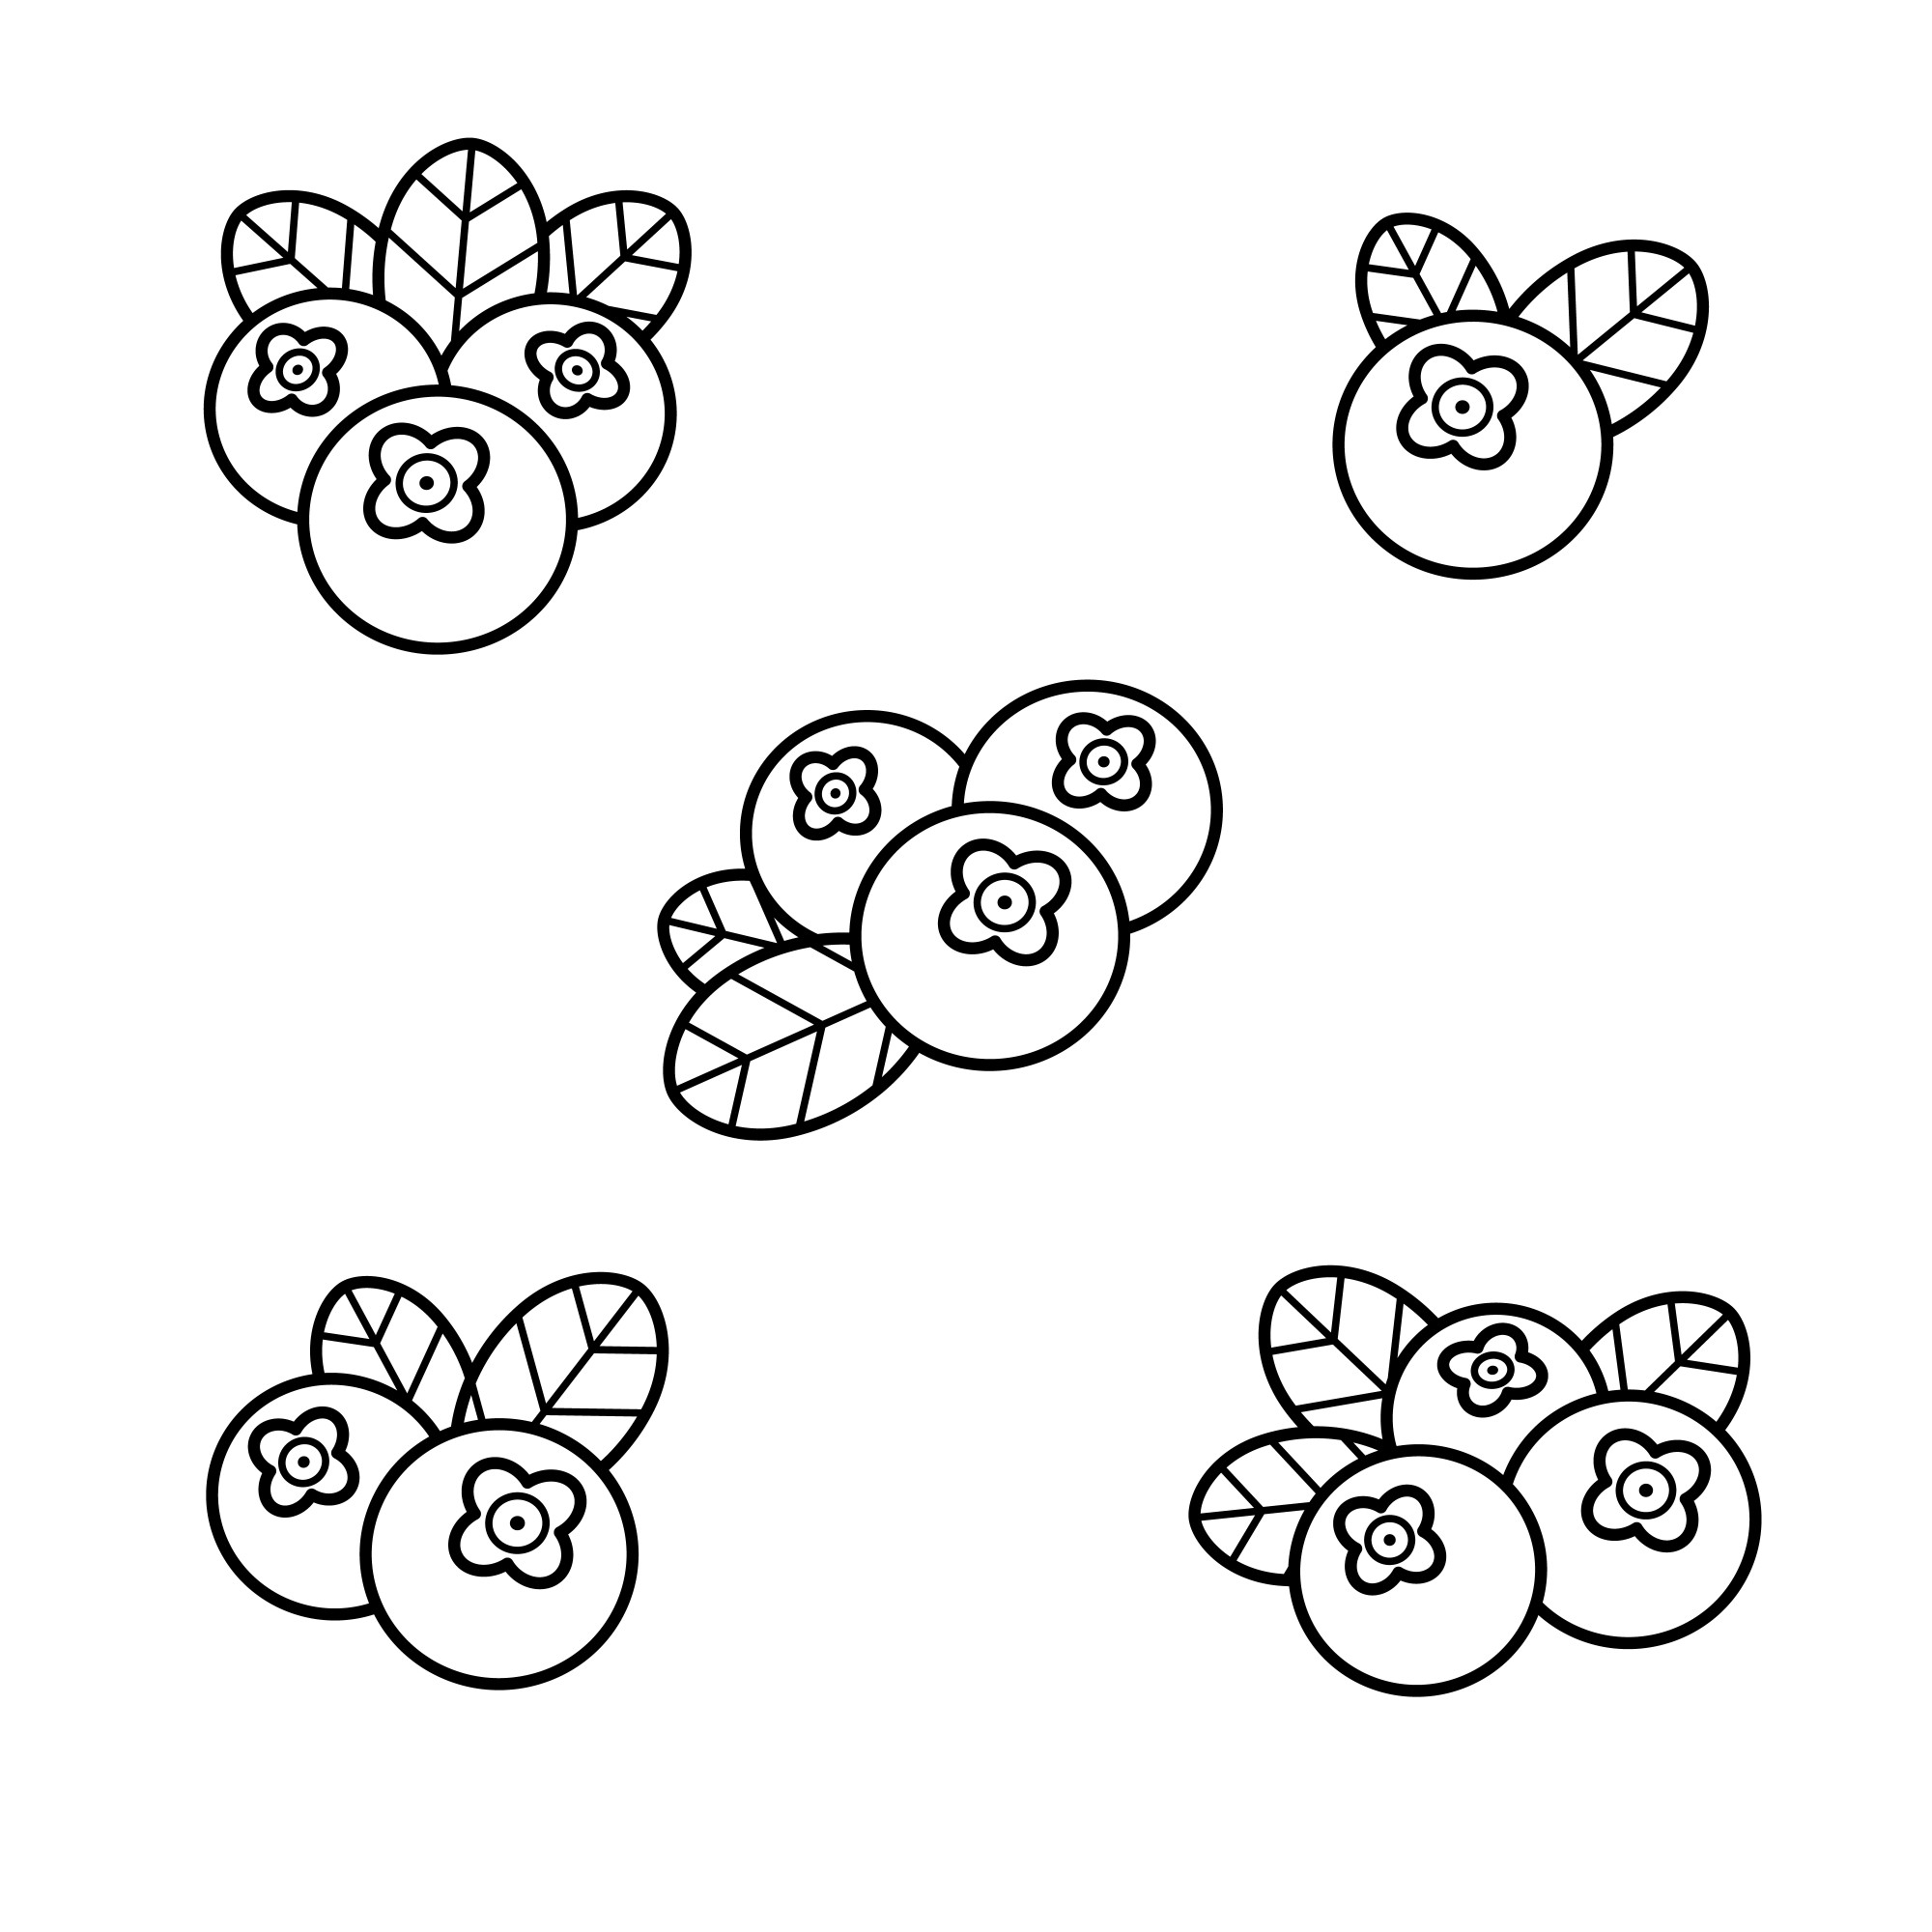 Раскраска для детей: спелые ягоды черники